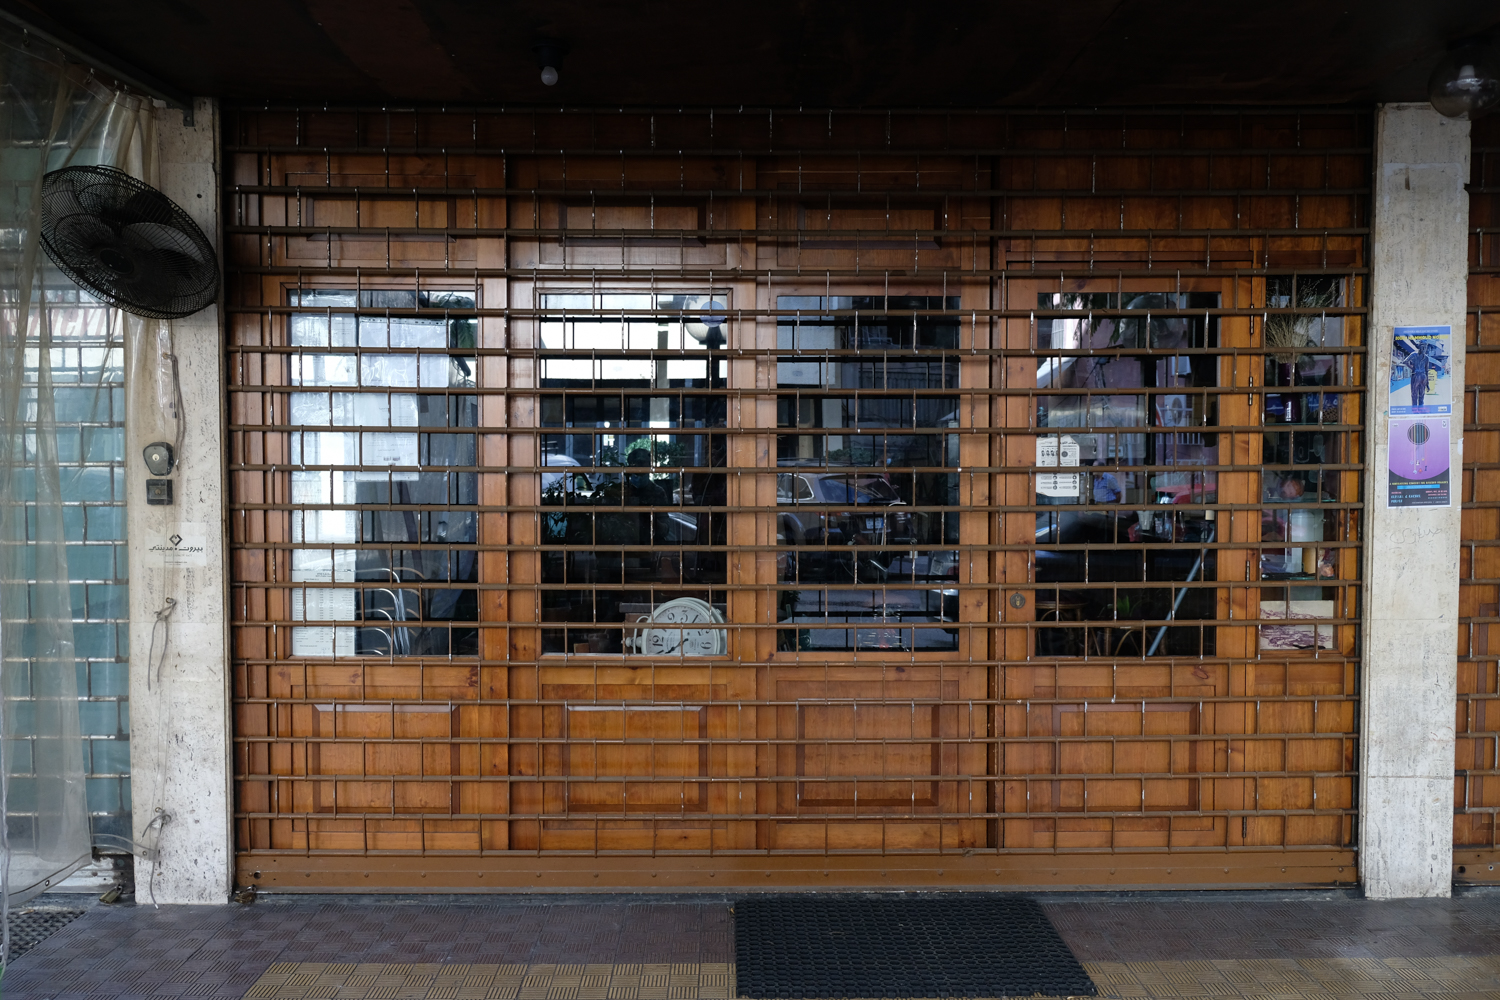 Rows, un des cafés où j’aime m’asseoir pour travailler est fermé. Je passe devant avec nostalgie © Globe Reporters